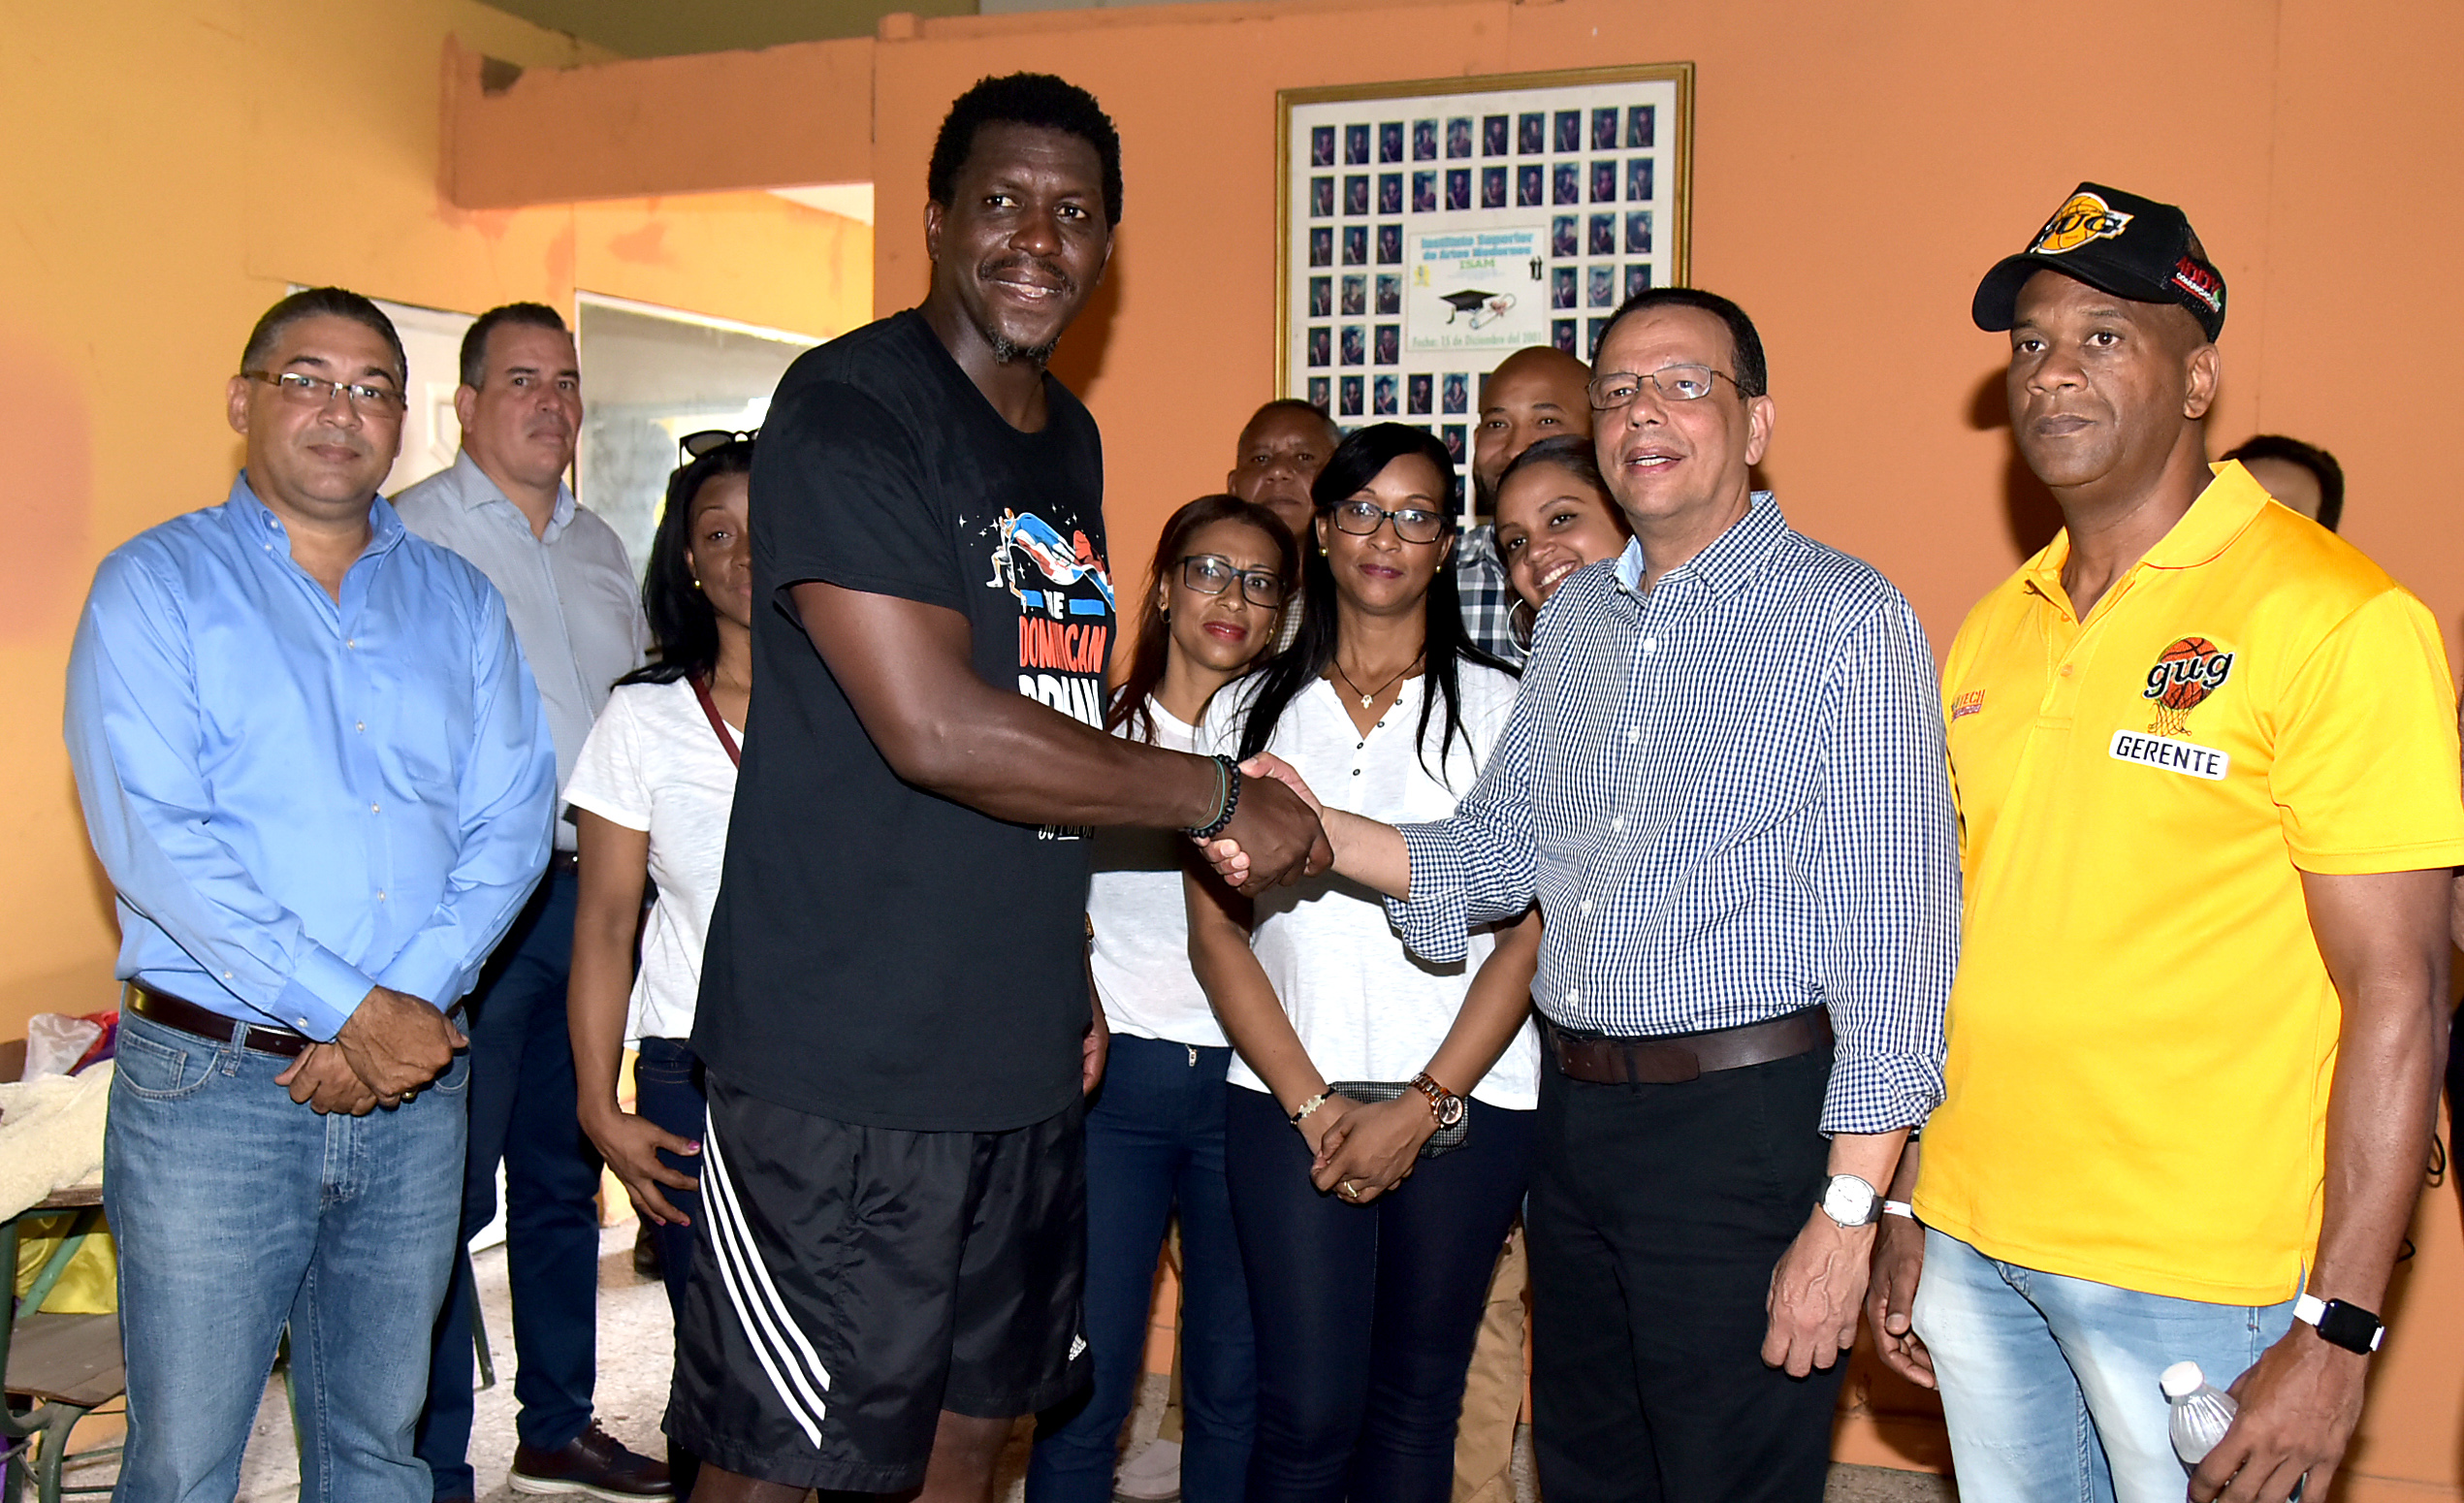  imagen Ministro de Educación, Antonio Peña Mirabal, conversa con un joven atleta del club GUG. 